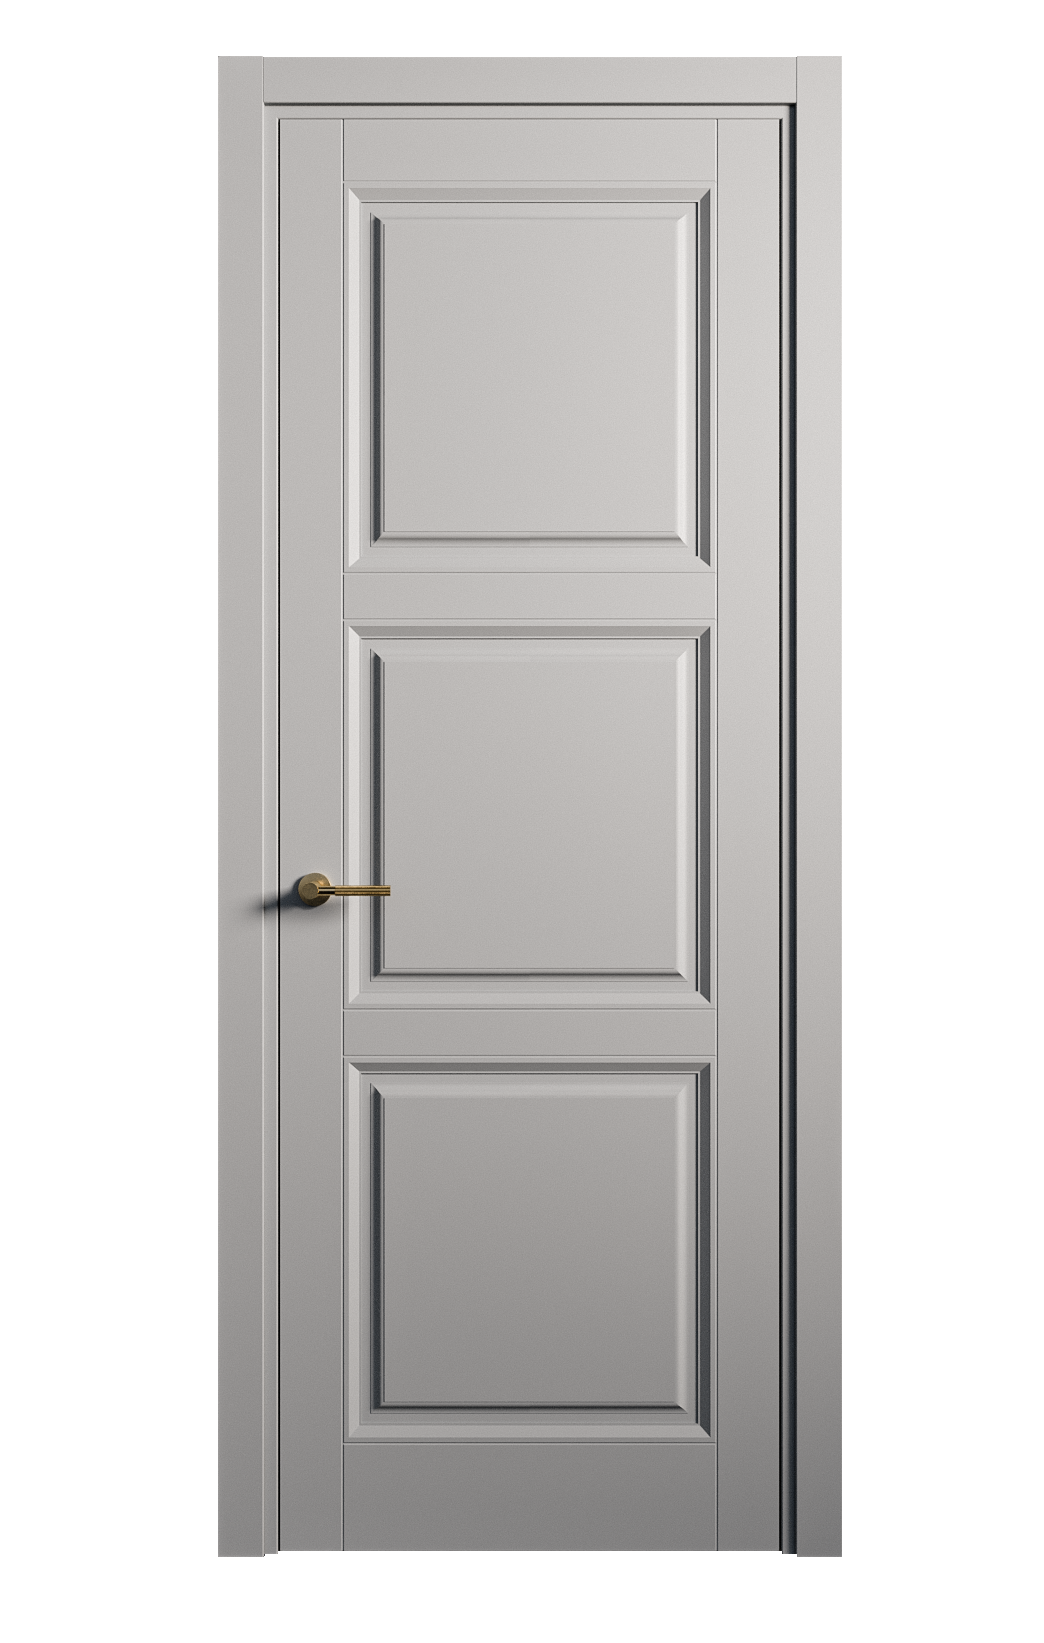 Межкомнатная дверь Venezia-3 глухая эмаль ral 7040 25755